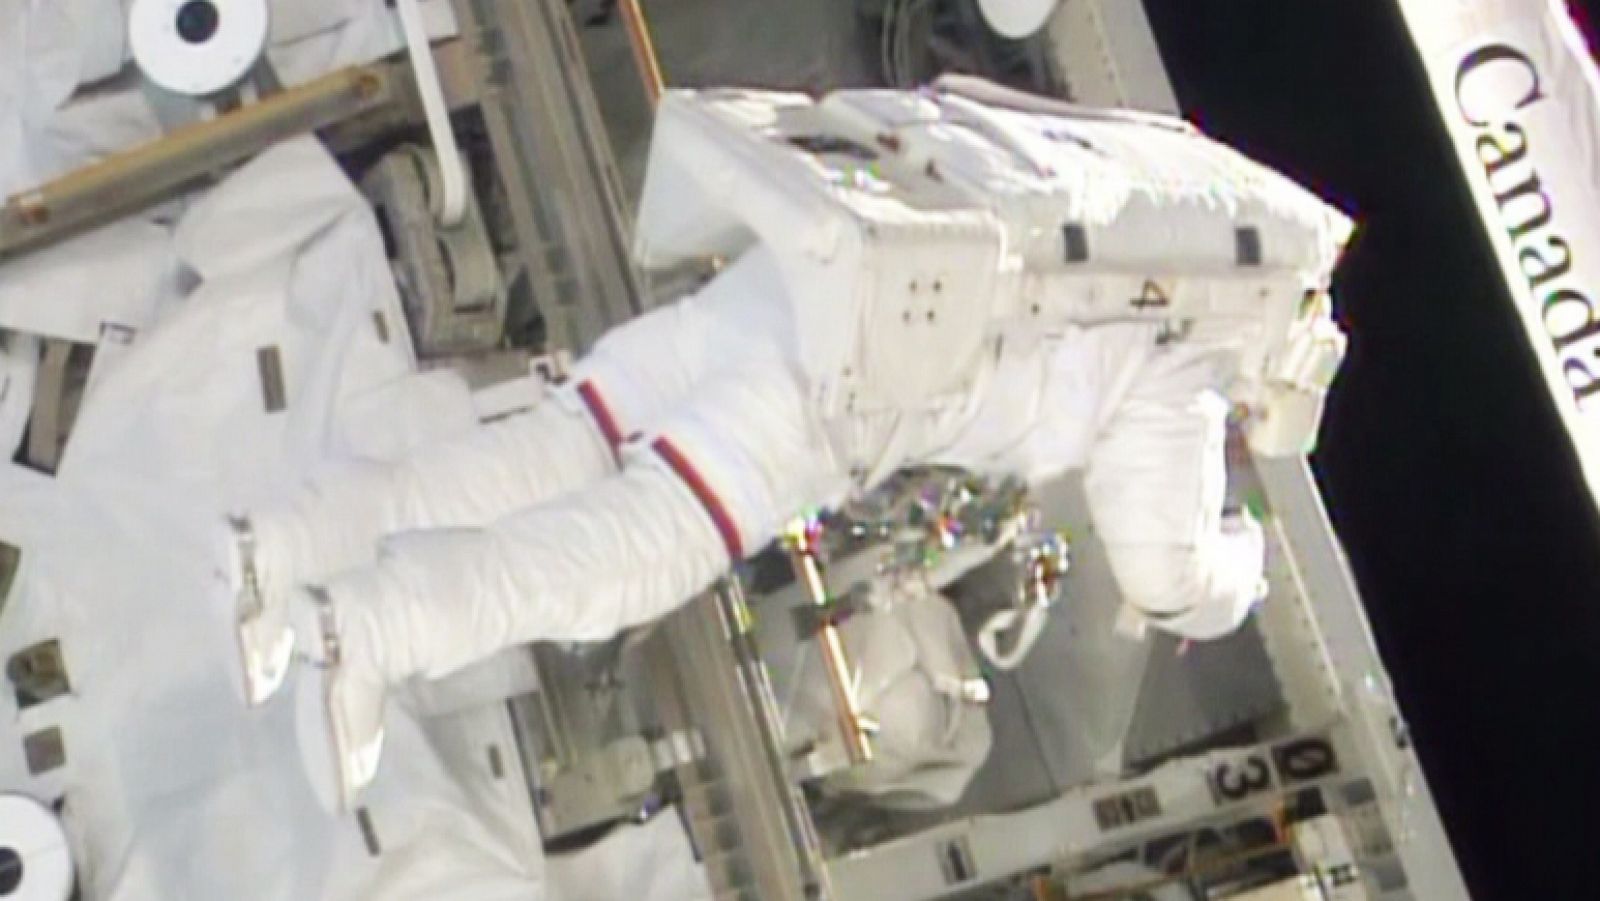 Uno de los astronautas trabajando en la sustitución del ordenador estropeado.